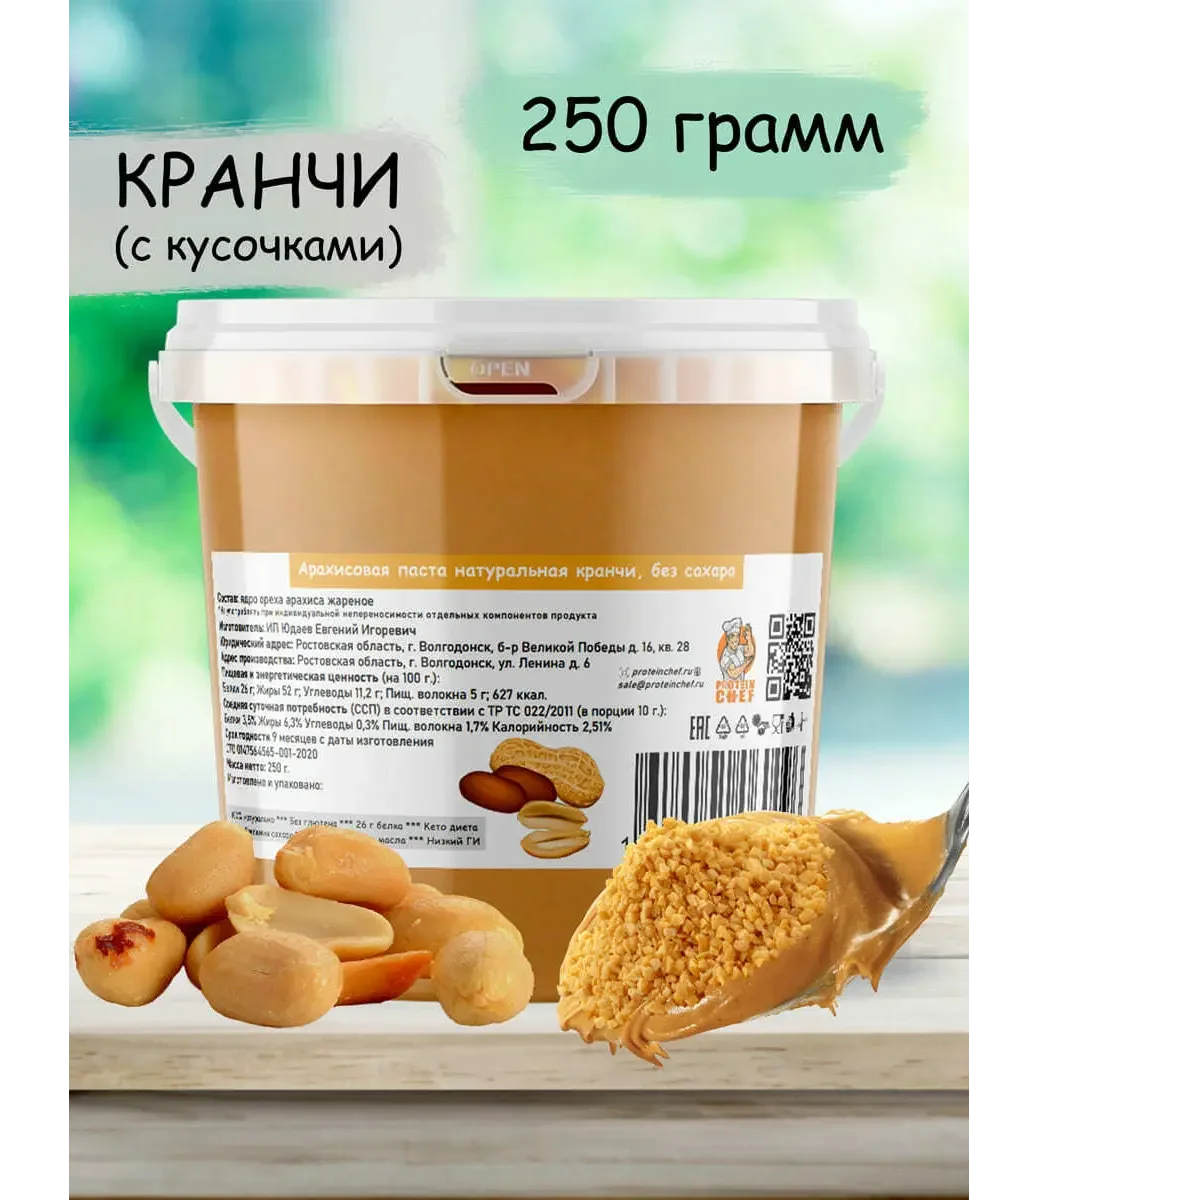 Арахисовая паста натуральная кранчи без сахара купить за 101 рублей оптом, недорого - B2BTRADE